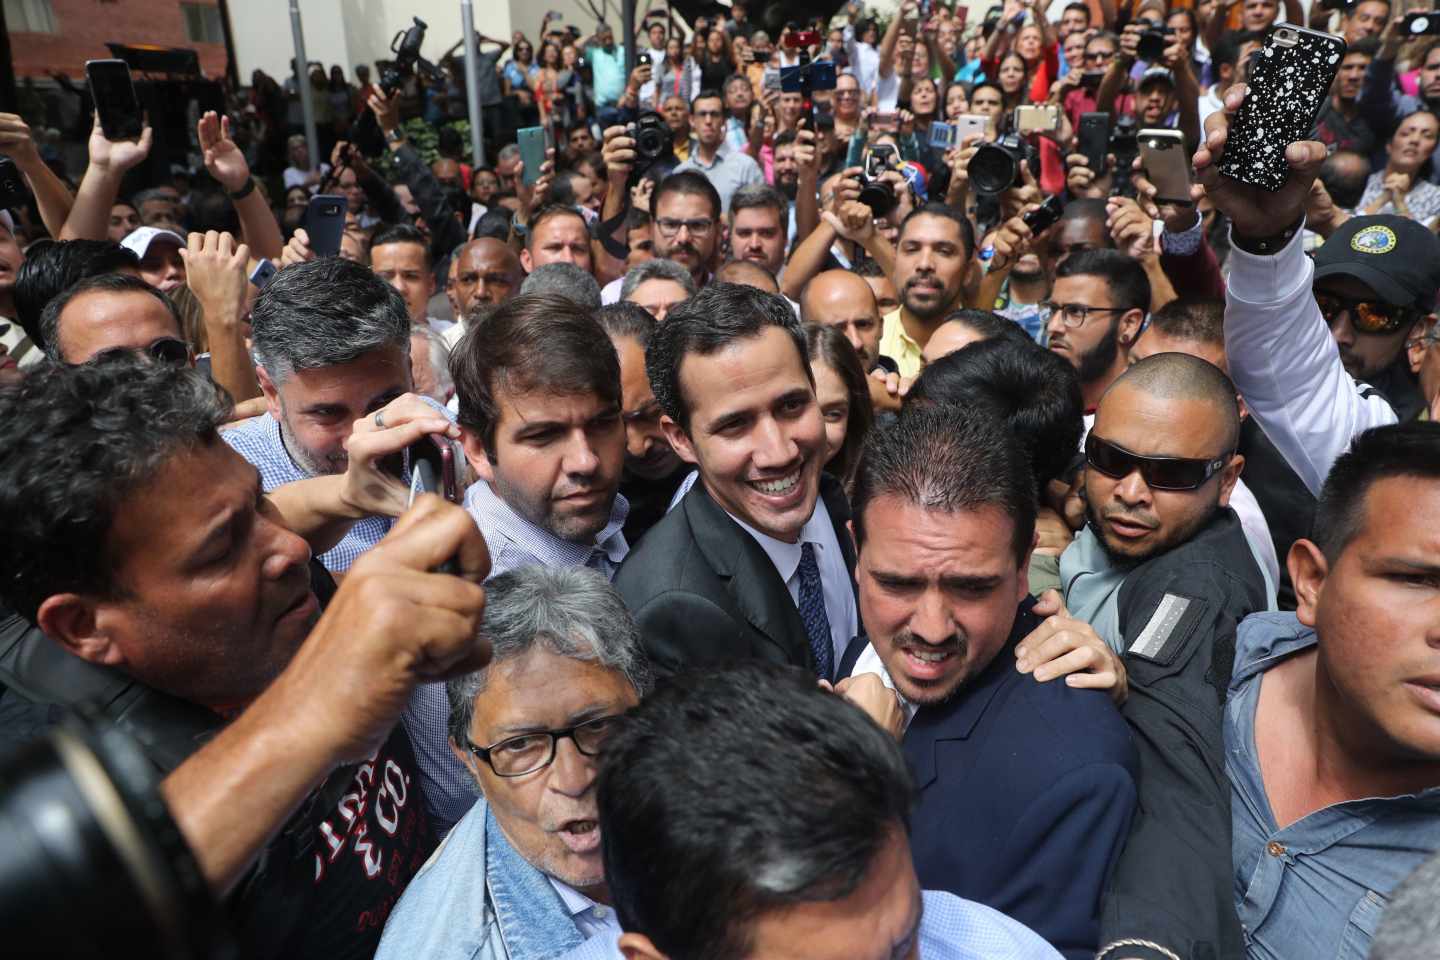 El presidente encargado de Venezuela, Juan Guaidó (C), a su llegada este viernes a un evento público con diputados en una plaza en el este de Caracas (Venezuela).